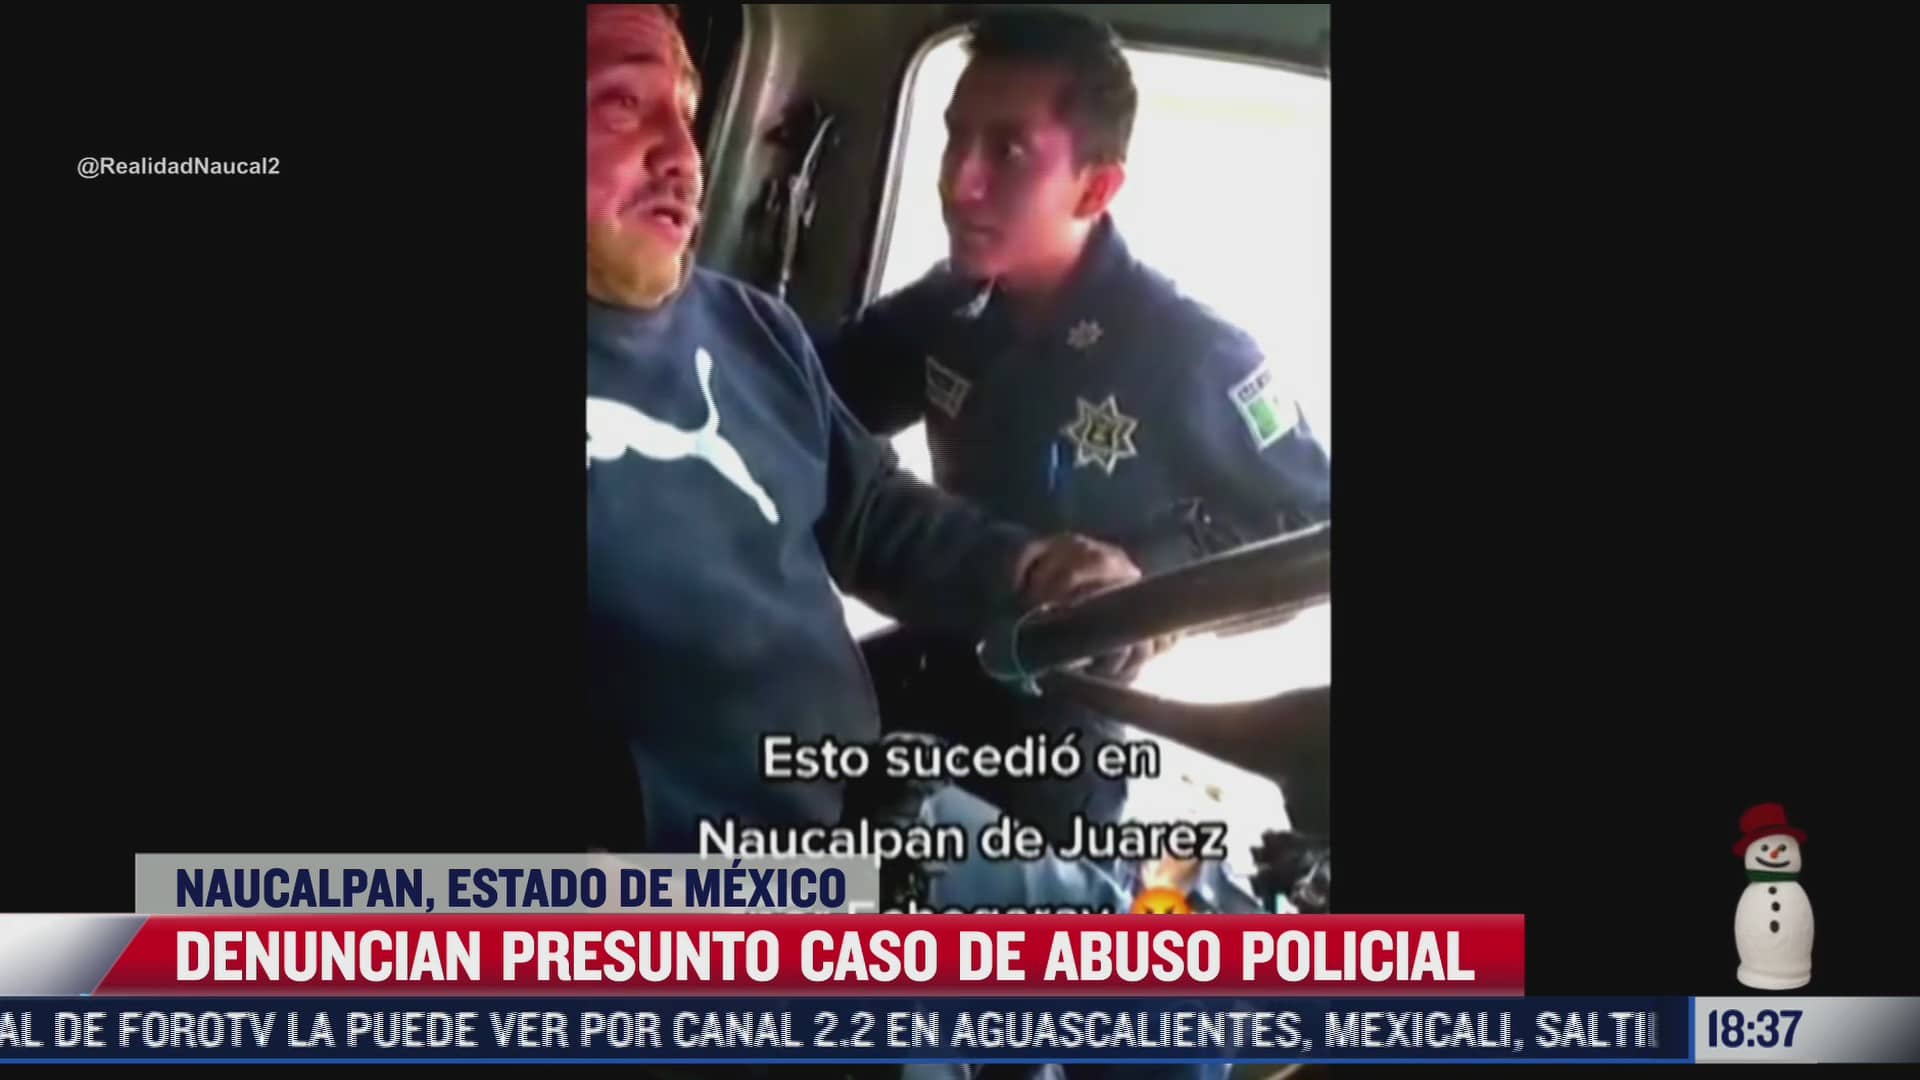 denuncian caso de abuso policial en el estado de mexico